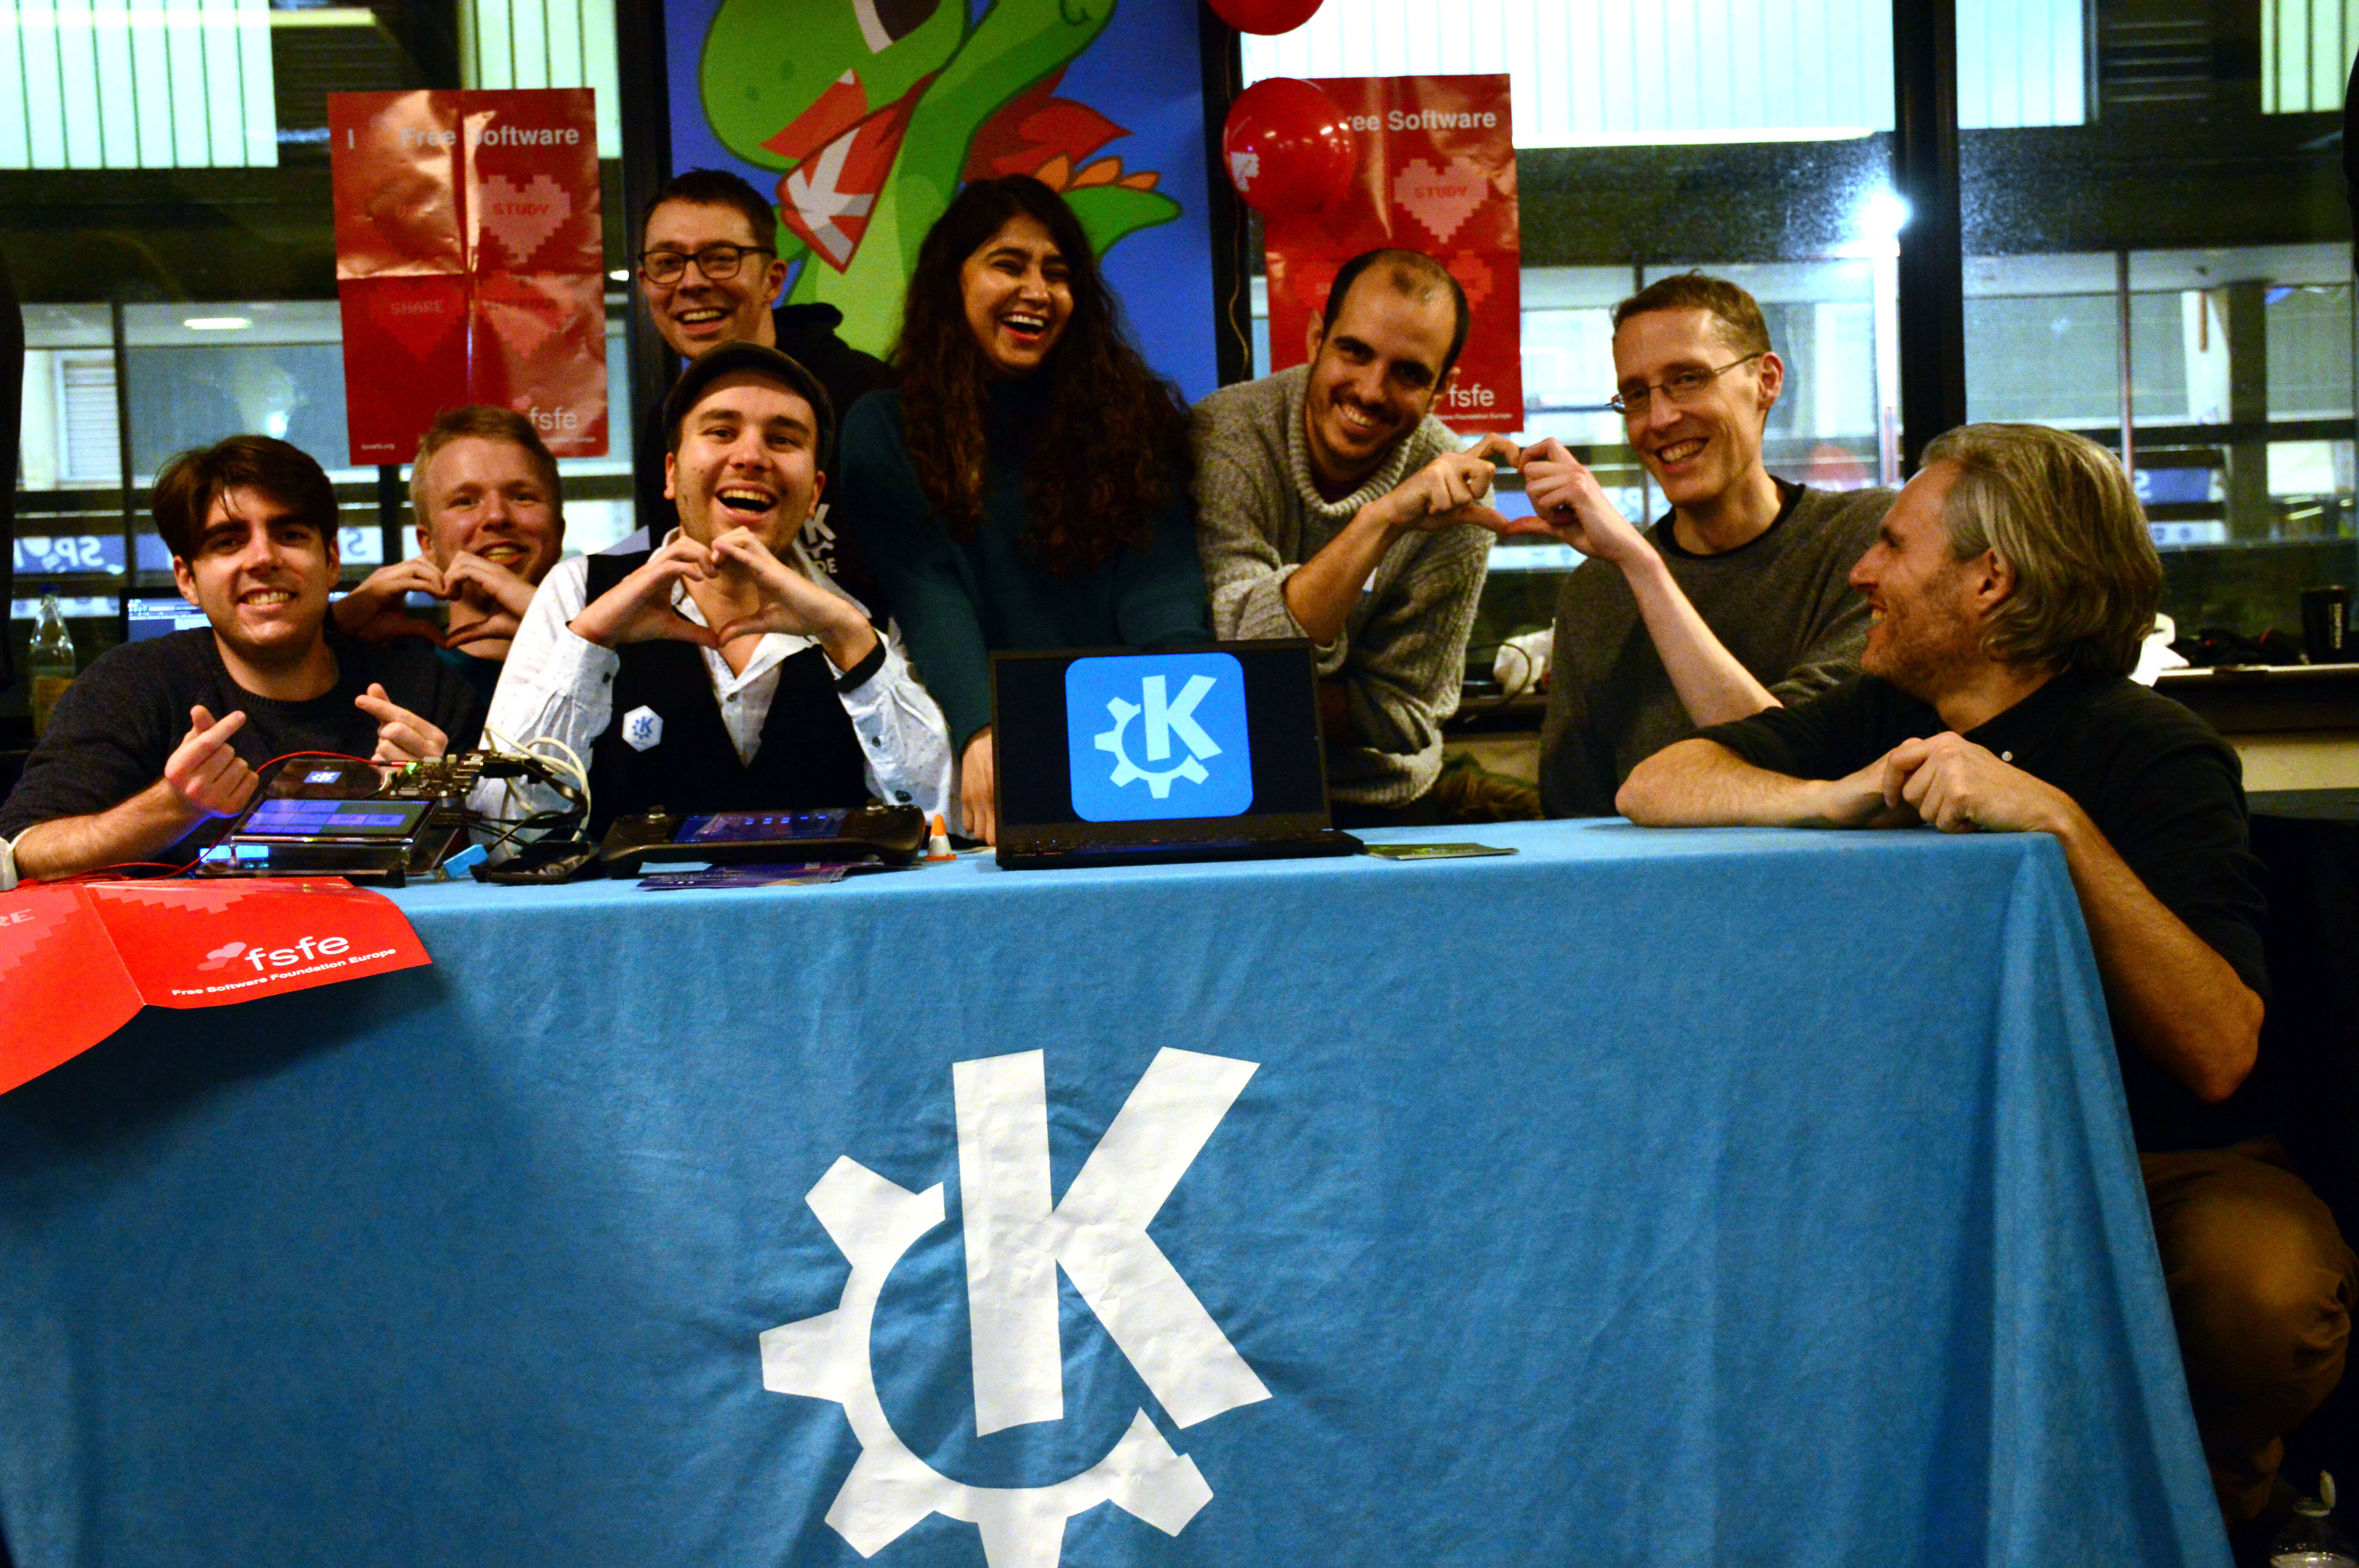 L'équipe de KDE exprimant leur ❤ pour les Logiciels Libres